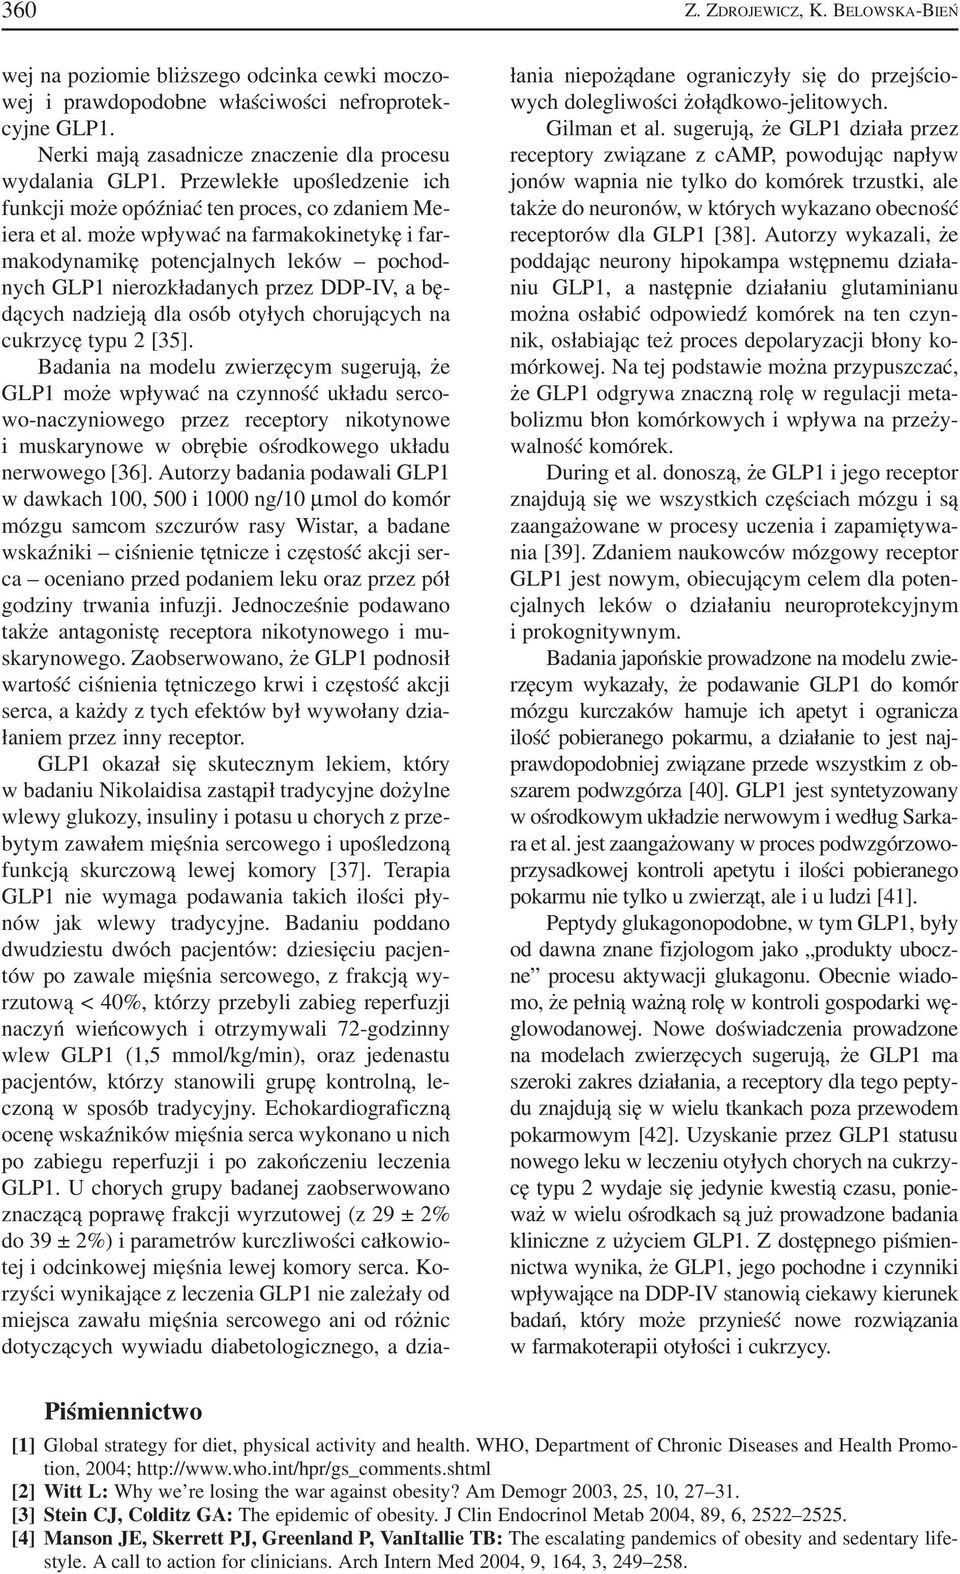 może wpływać na farmakokinetykę i far makodynamikę potencjalnych leków pochod nych GLP1 nierozkładanych przez DDP IV, a bę dących nadzieją dla osób otyłych chorujących na cukrzycę typu 2 [35].